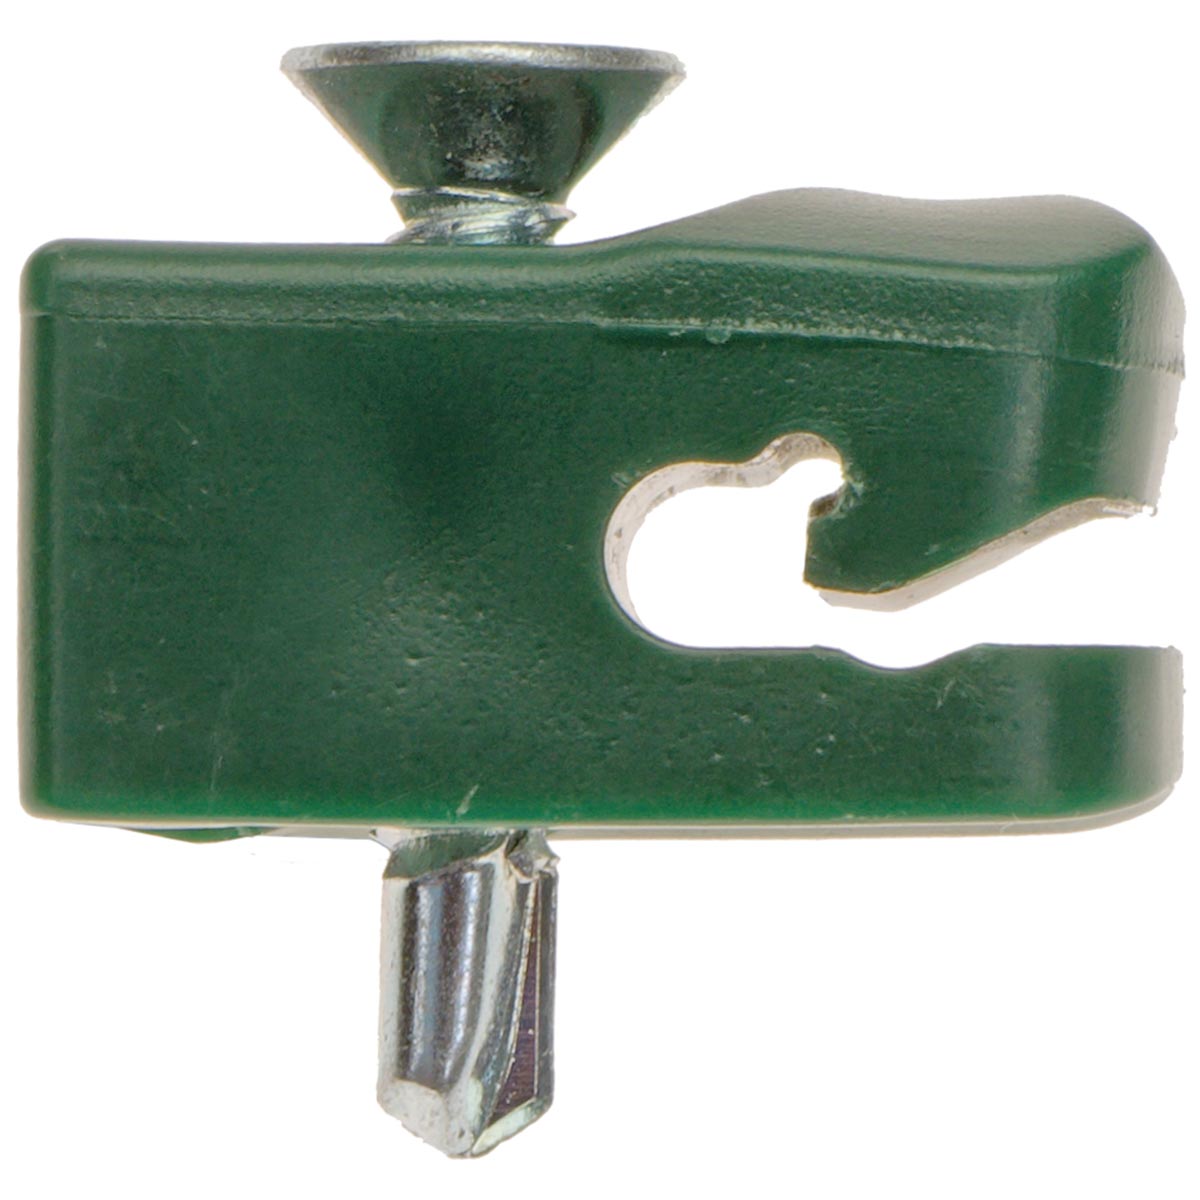 5 Stück Drahthalter mit Schraube Spanndrahthalter 16mm x 26mm in grün